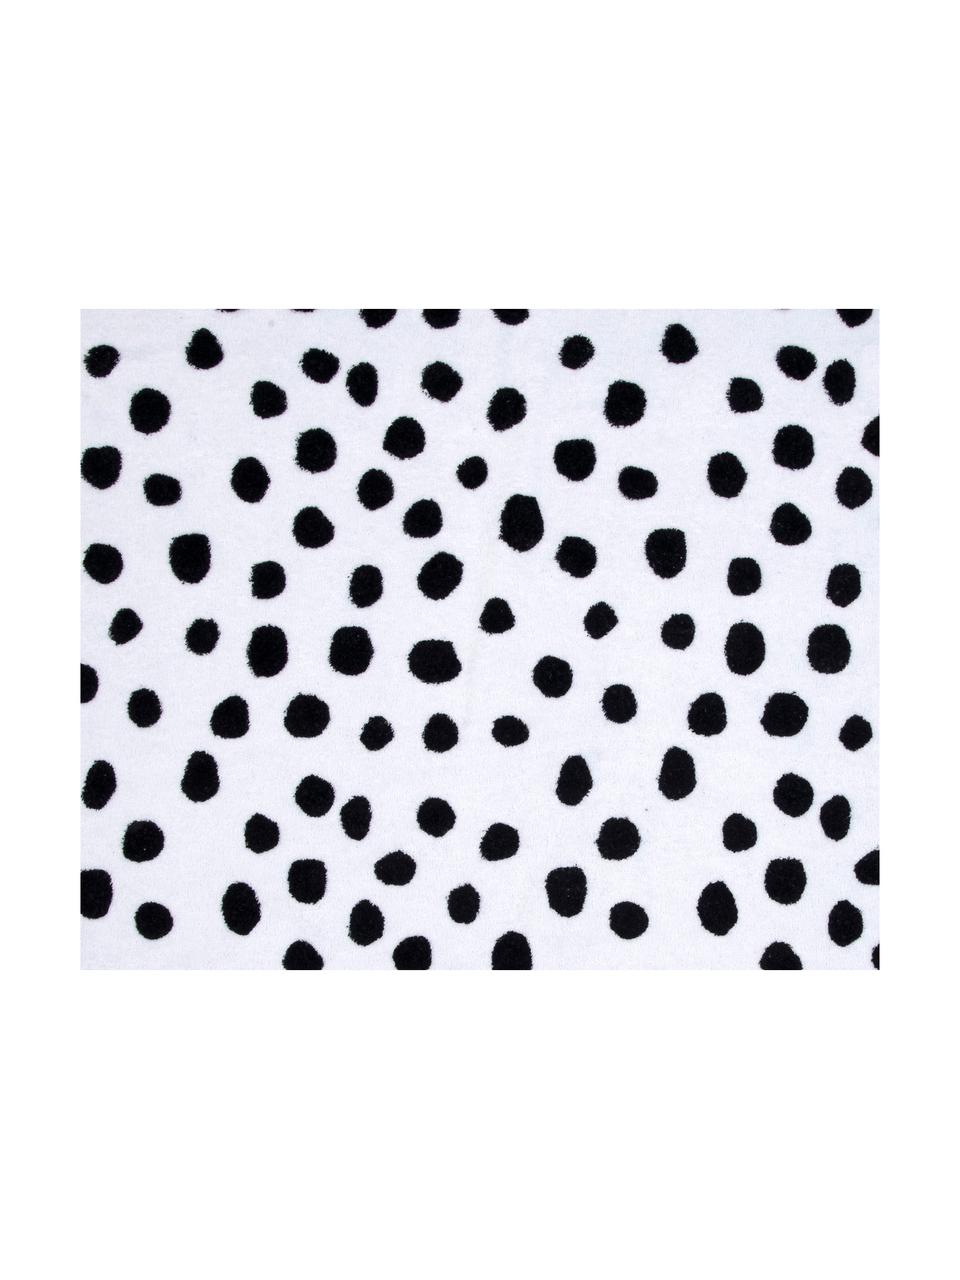 Strandtuch Dalmatiner, 100% Baumwolle, leichte Qualität
350 g/m², Schwarz,Weiß, 90 x 160 cm